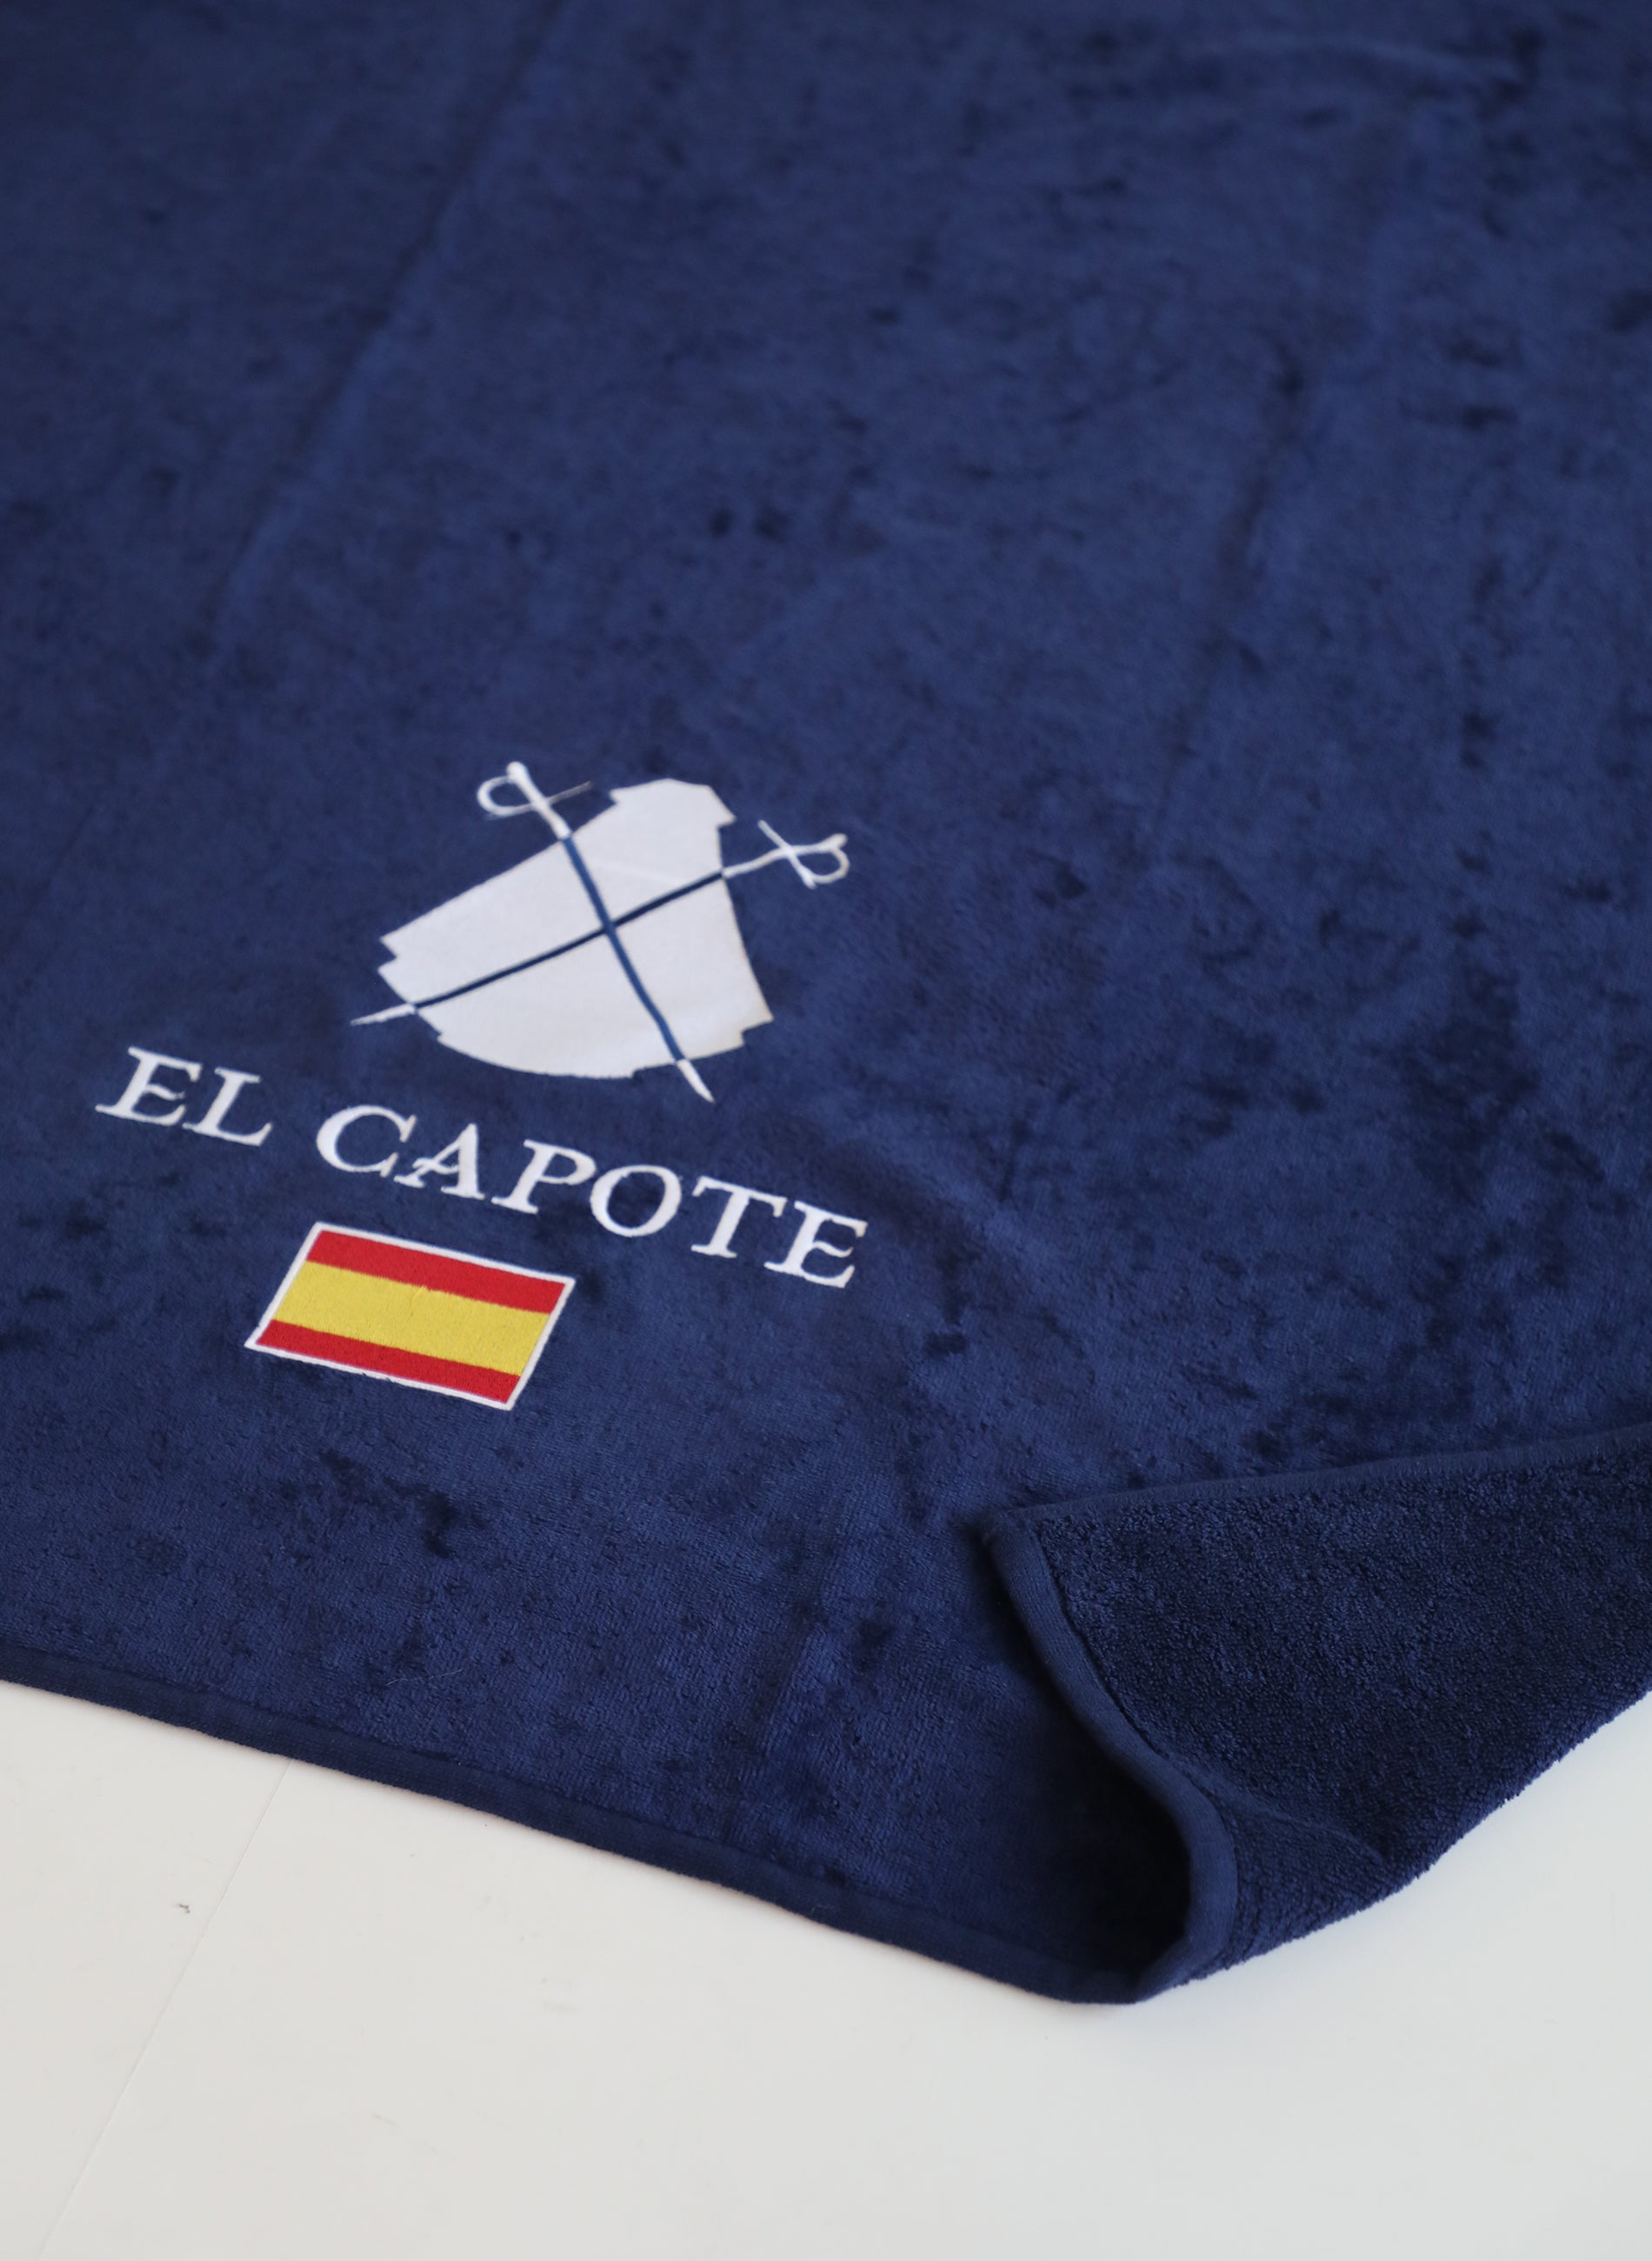 西班牙藍色毛巾